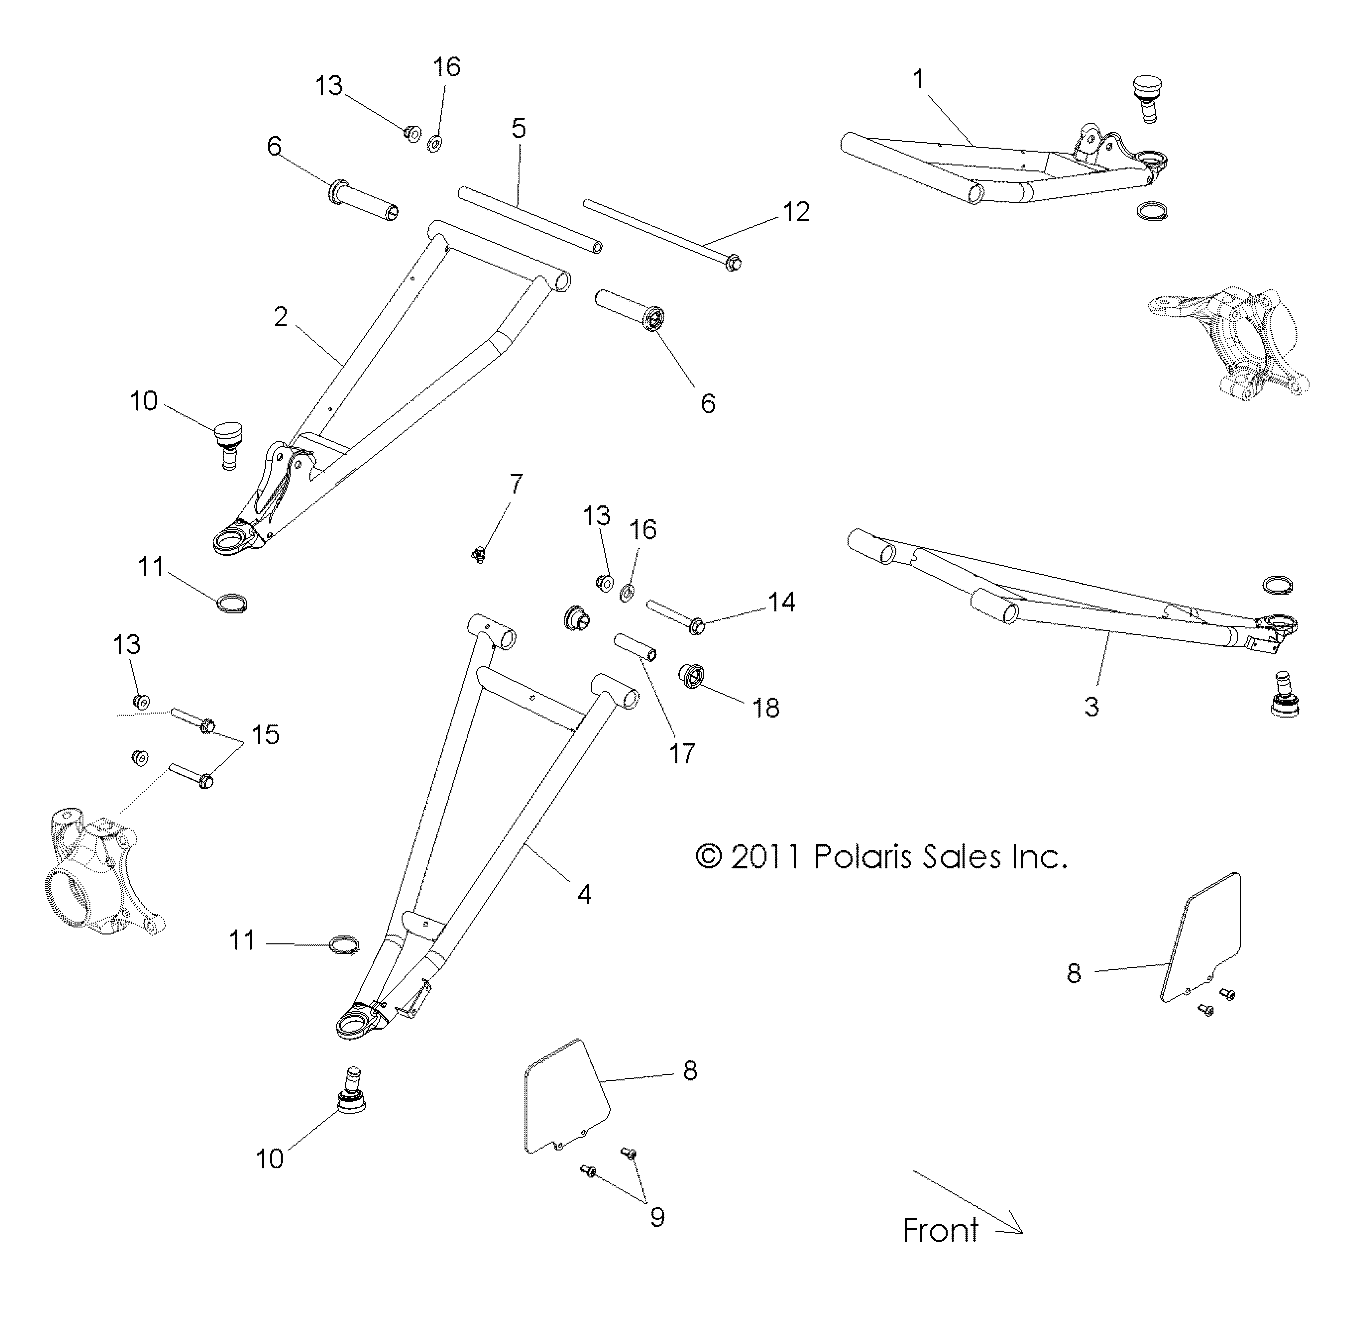 Foto diagrama Polaris que contem a peça 1018357-293